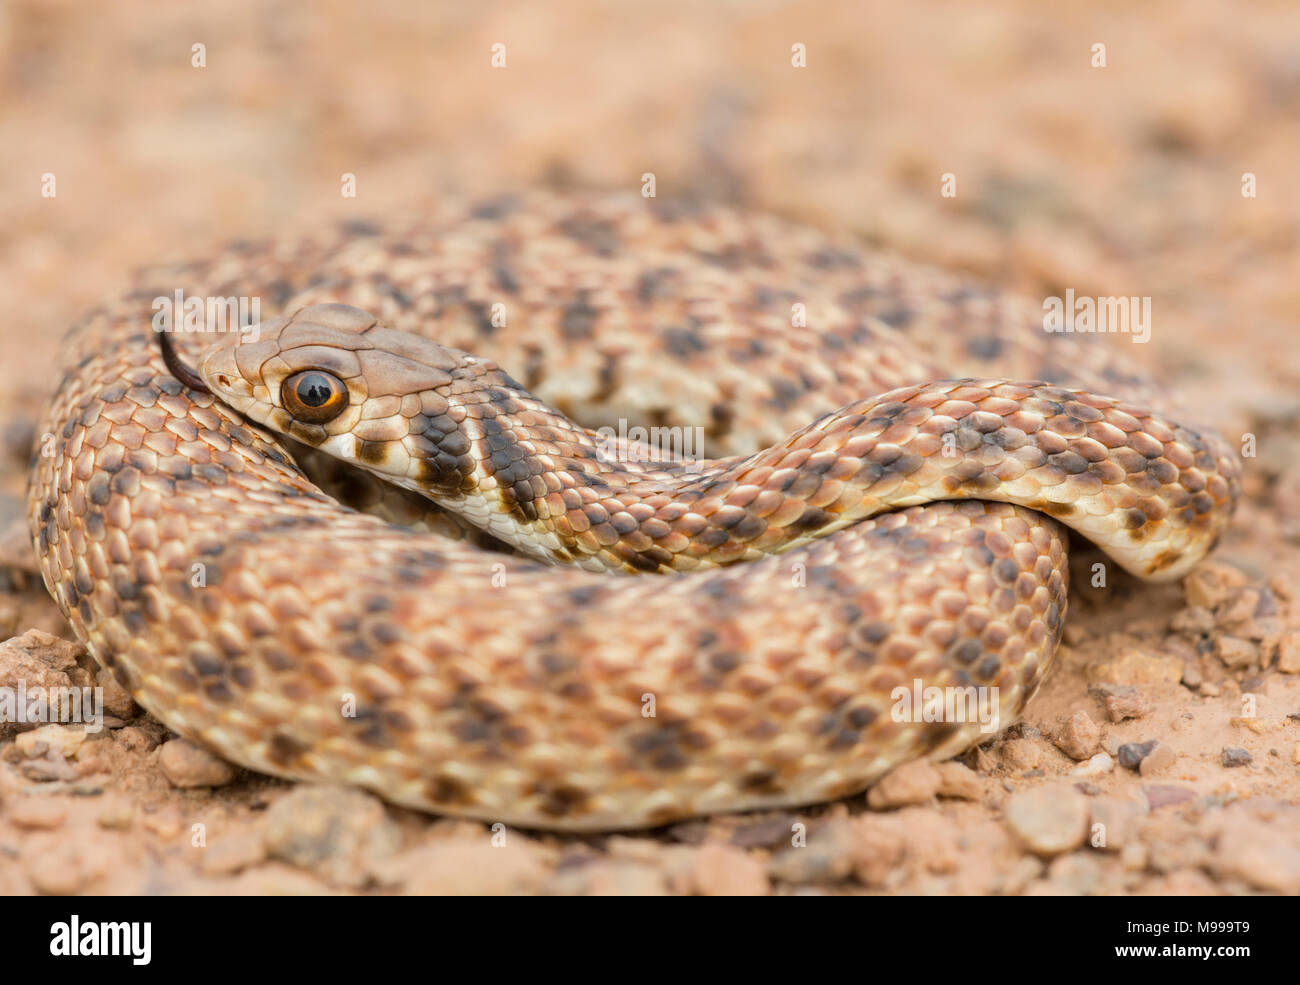 Moila Schlange oder falsche Cobra (Rhageris moilensis) in der Wüste von Marokko in Nordafrika. Stockfoto